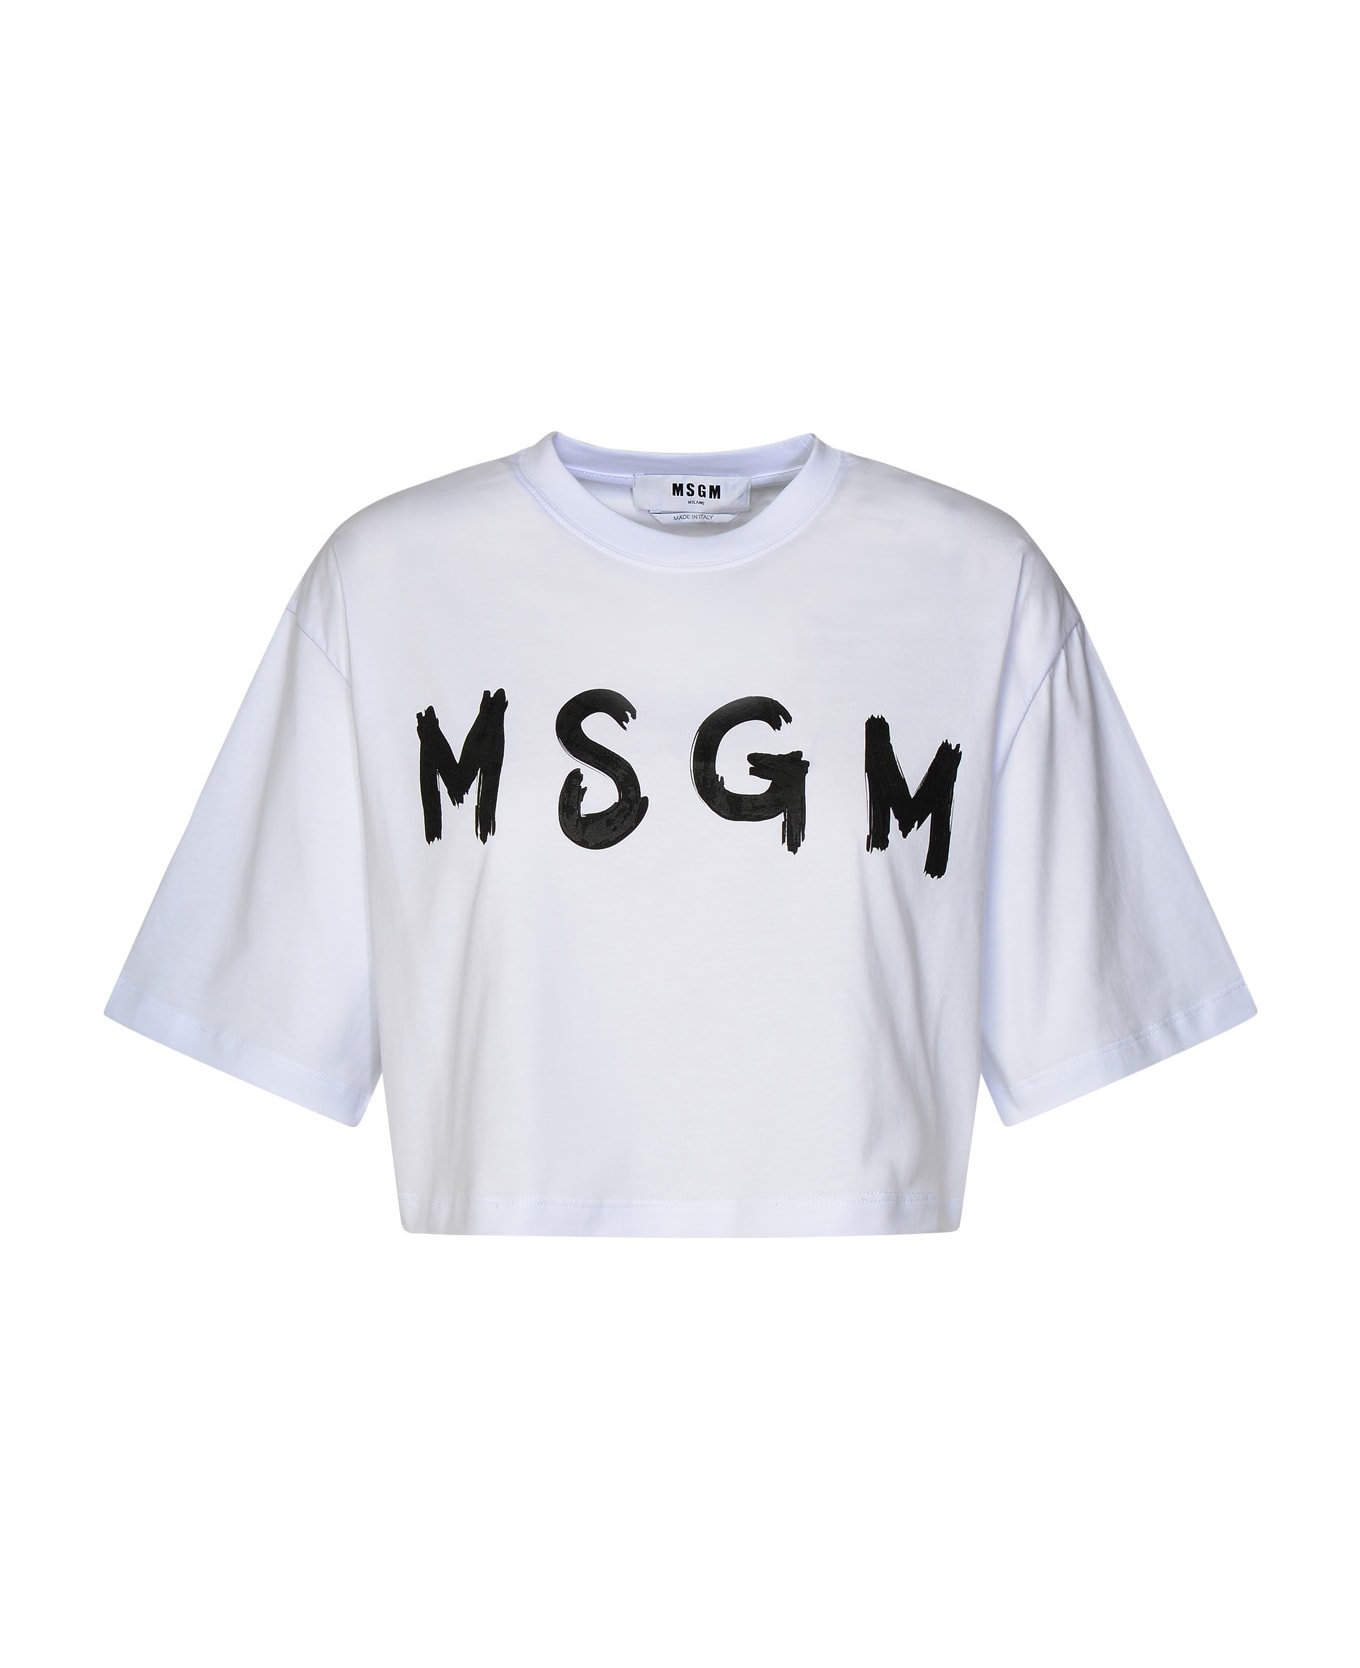 MSGM White Cotton T-shirt - White